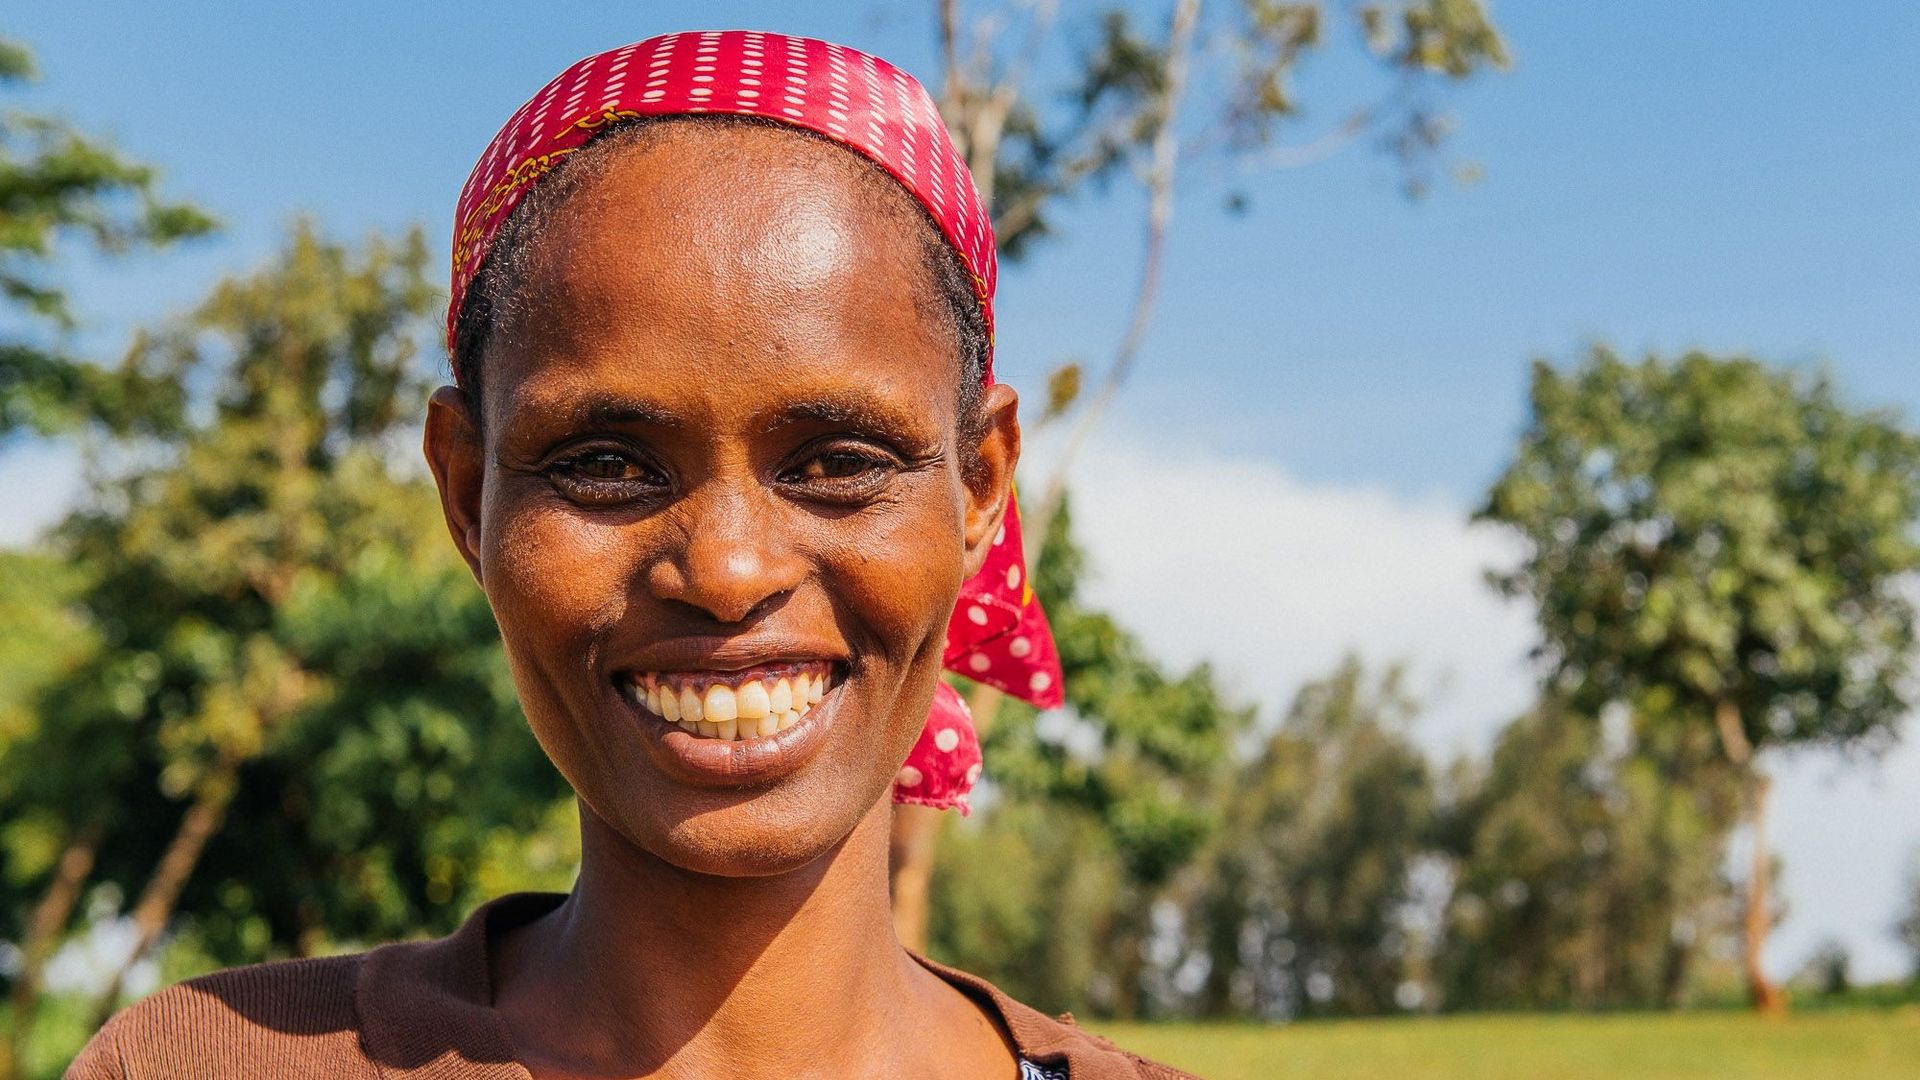 De magnifiques rencontres en Ethiopie dans "Un monde positif"